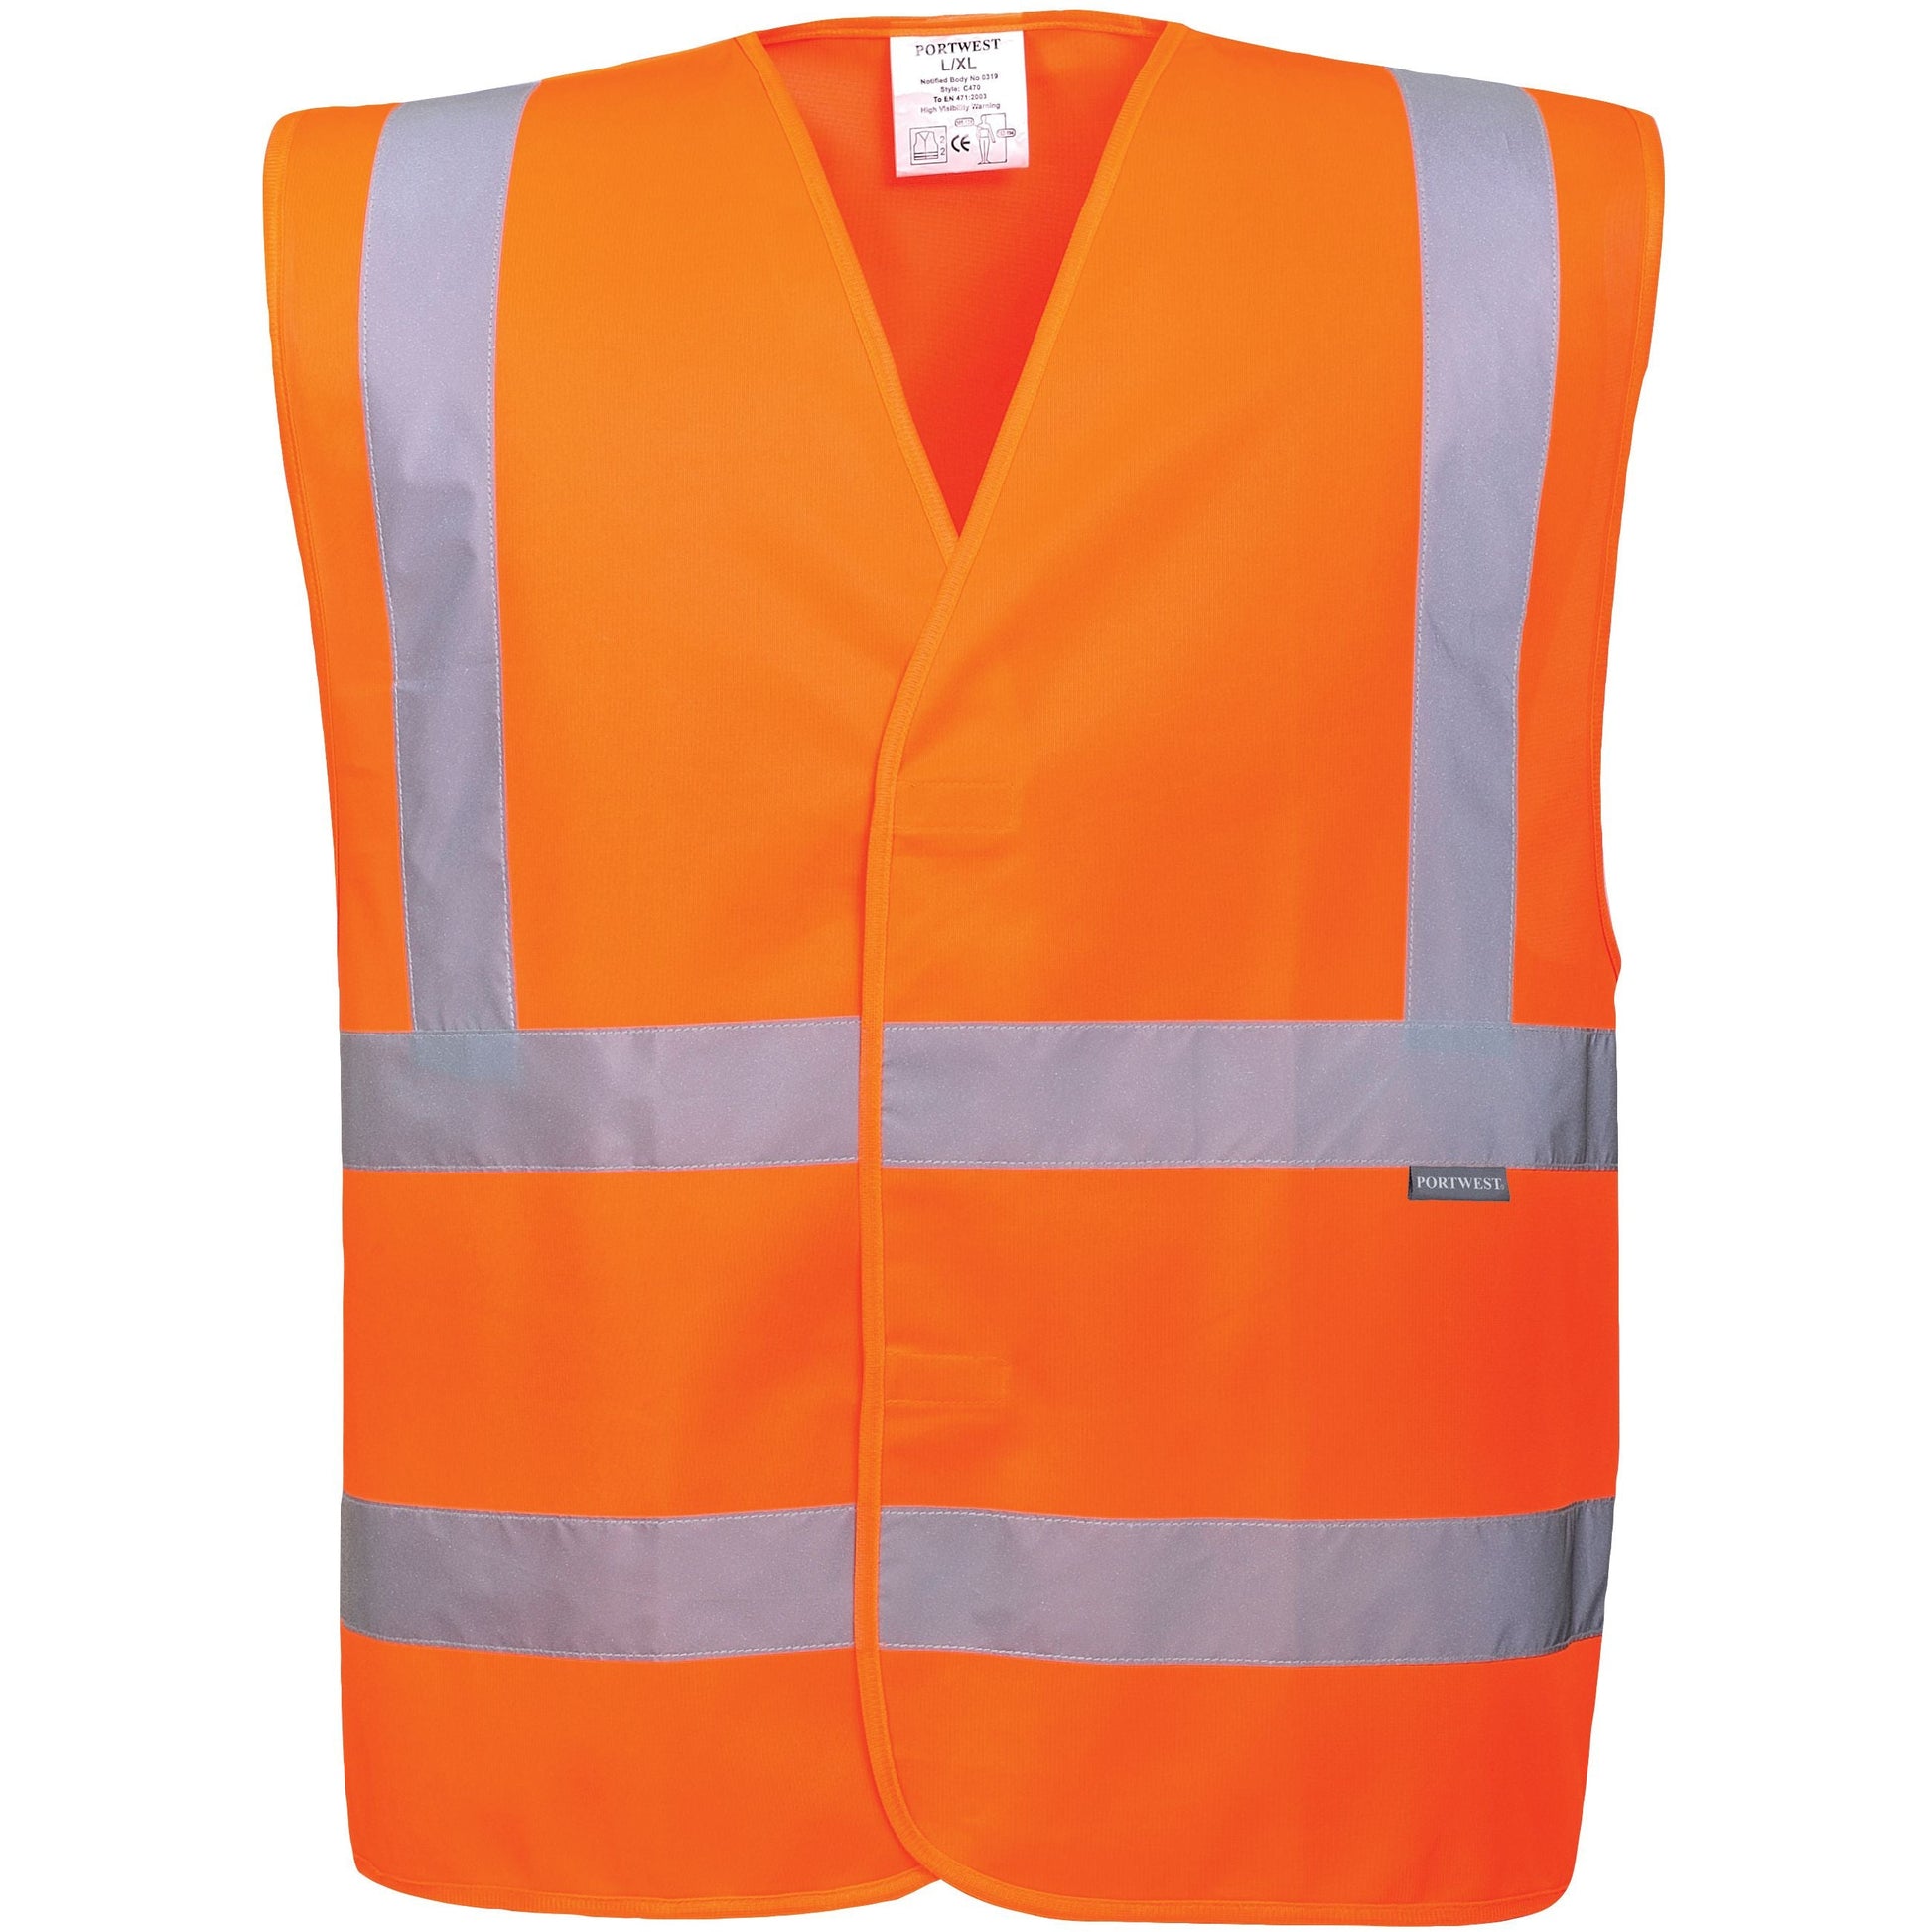 Portwest High Visibility Vest - Orange